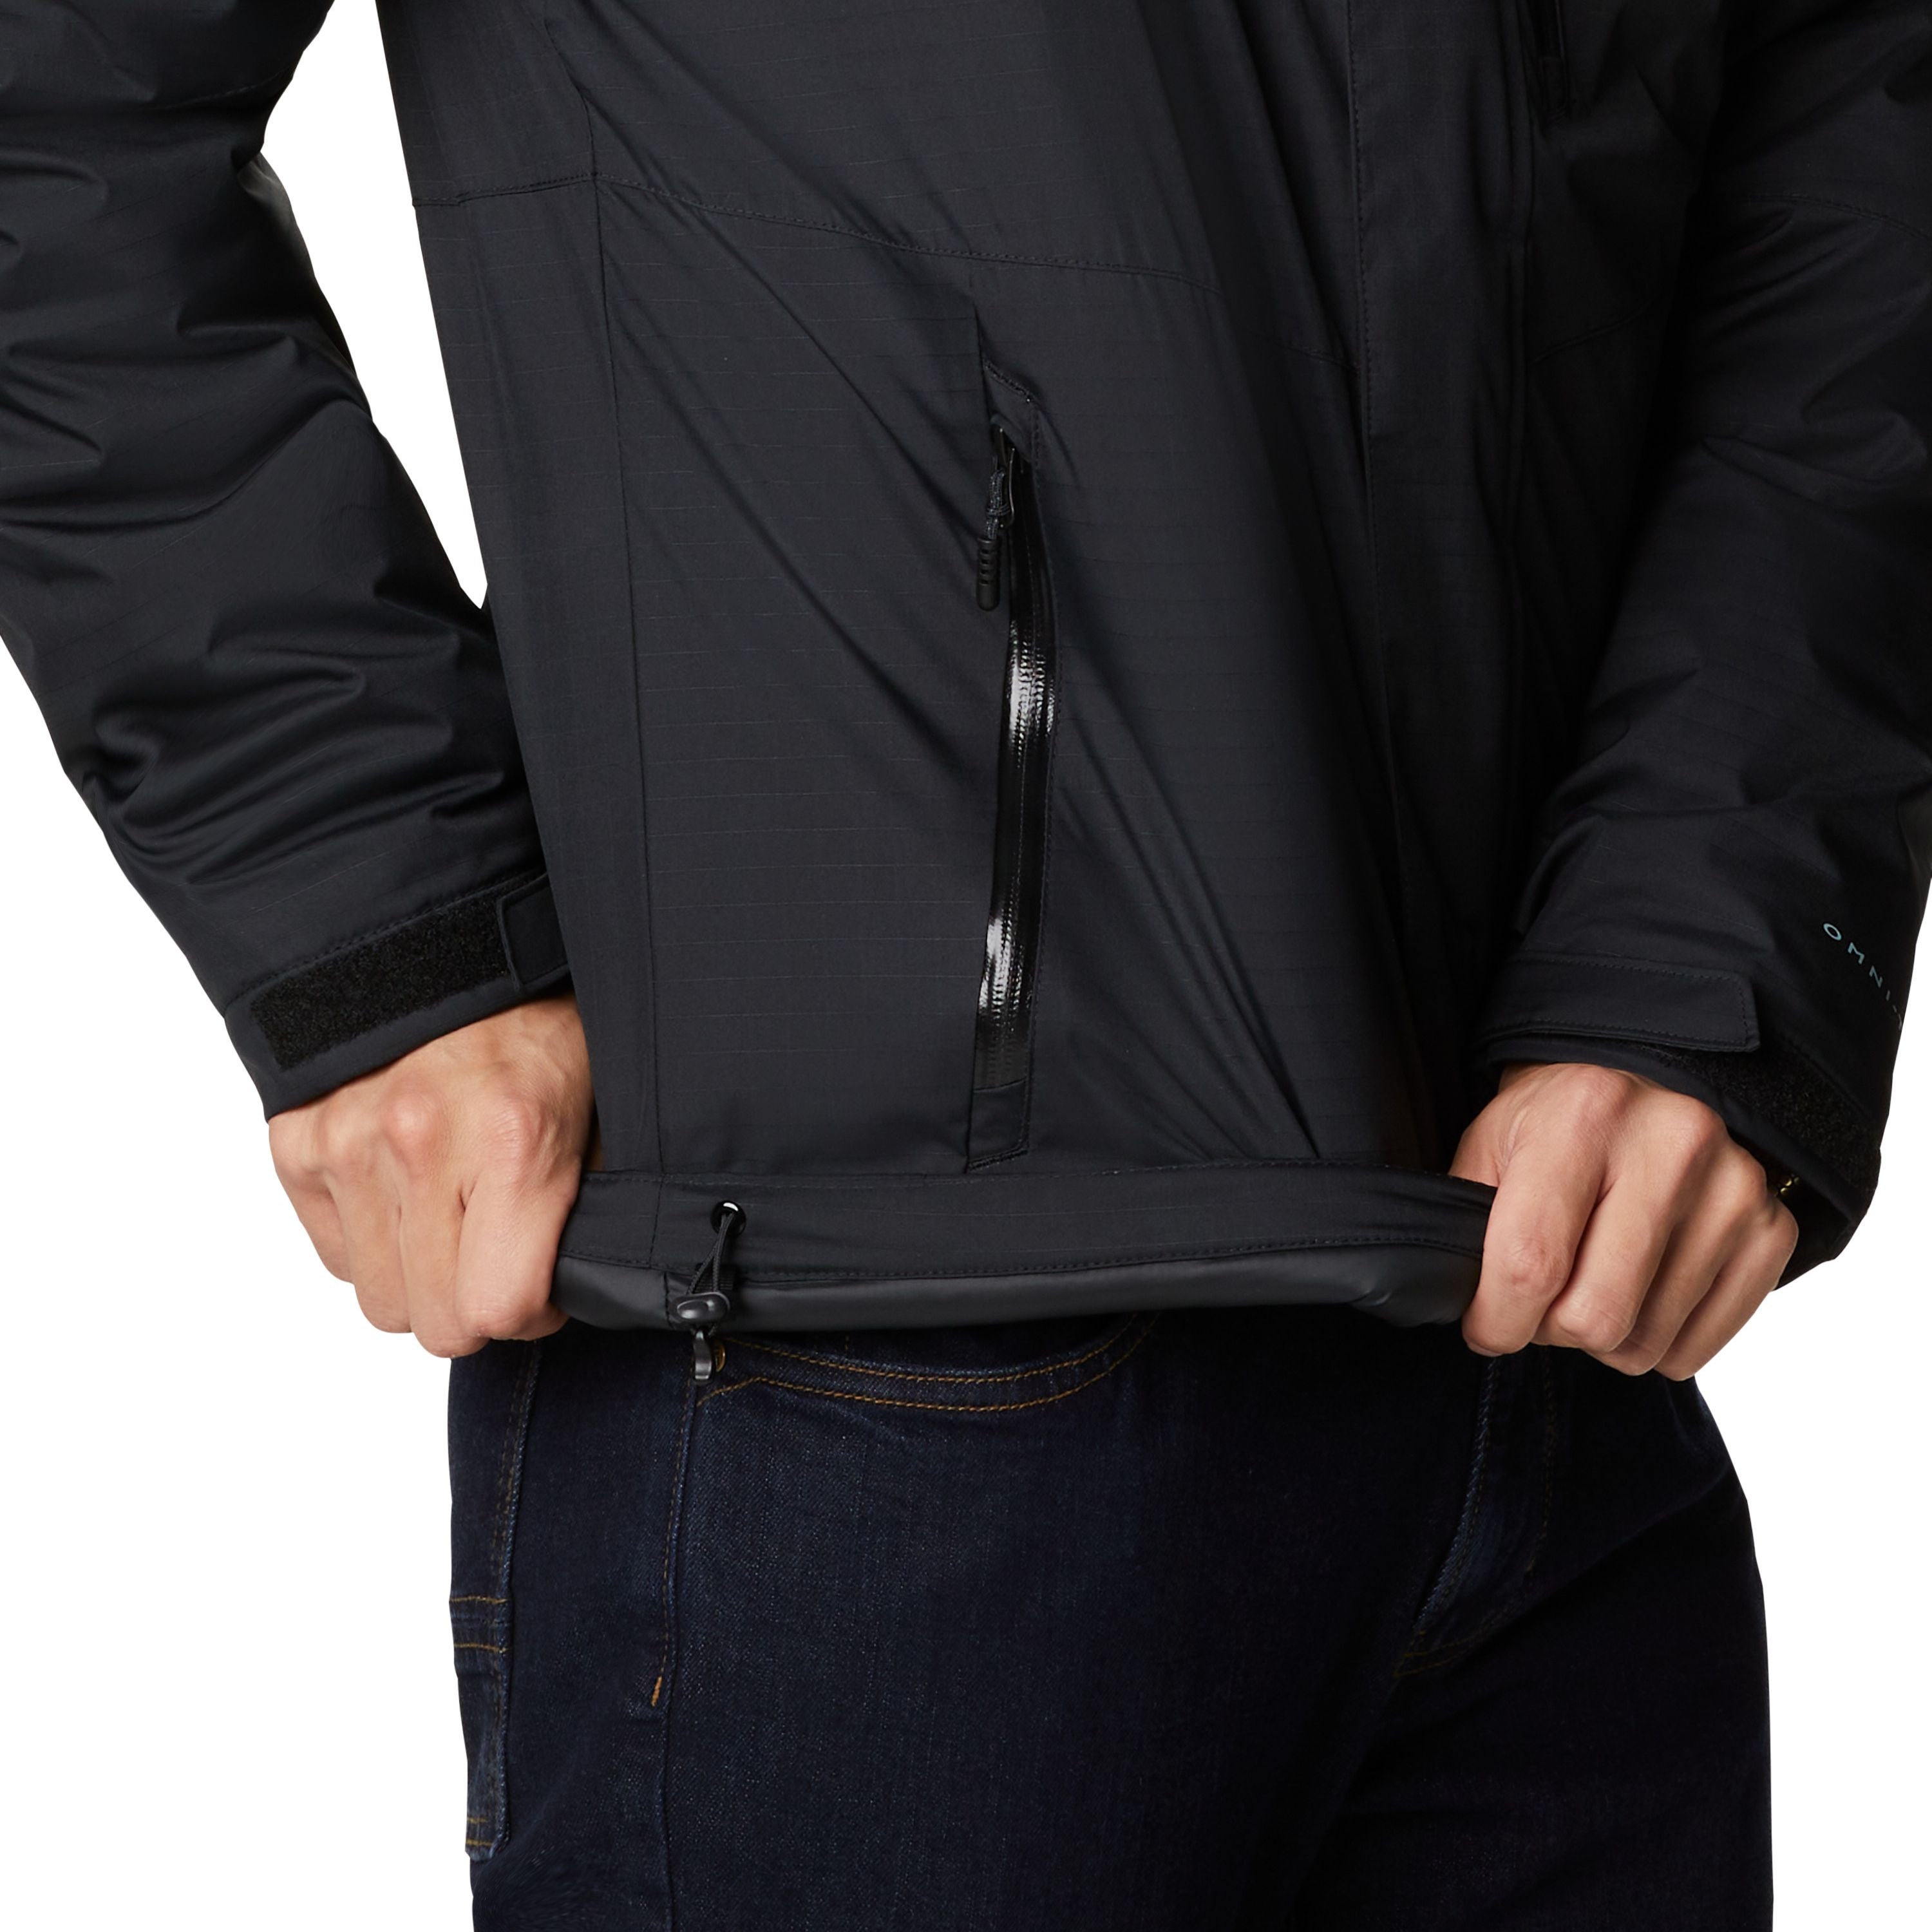 Manteau d'hiver "Oak Harbor" - Homme||"Oak Harbor" Winter jacket - Men's